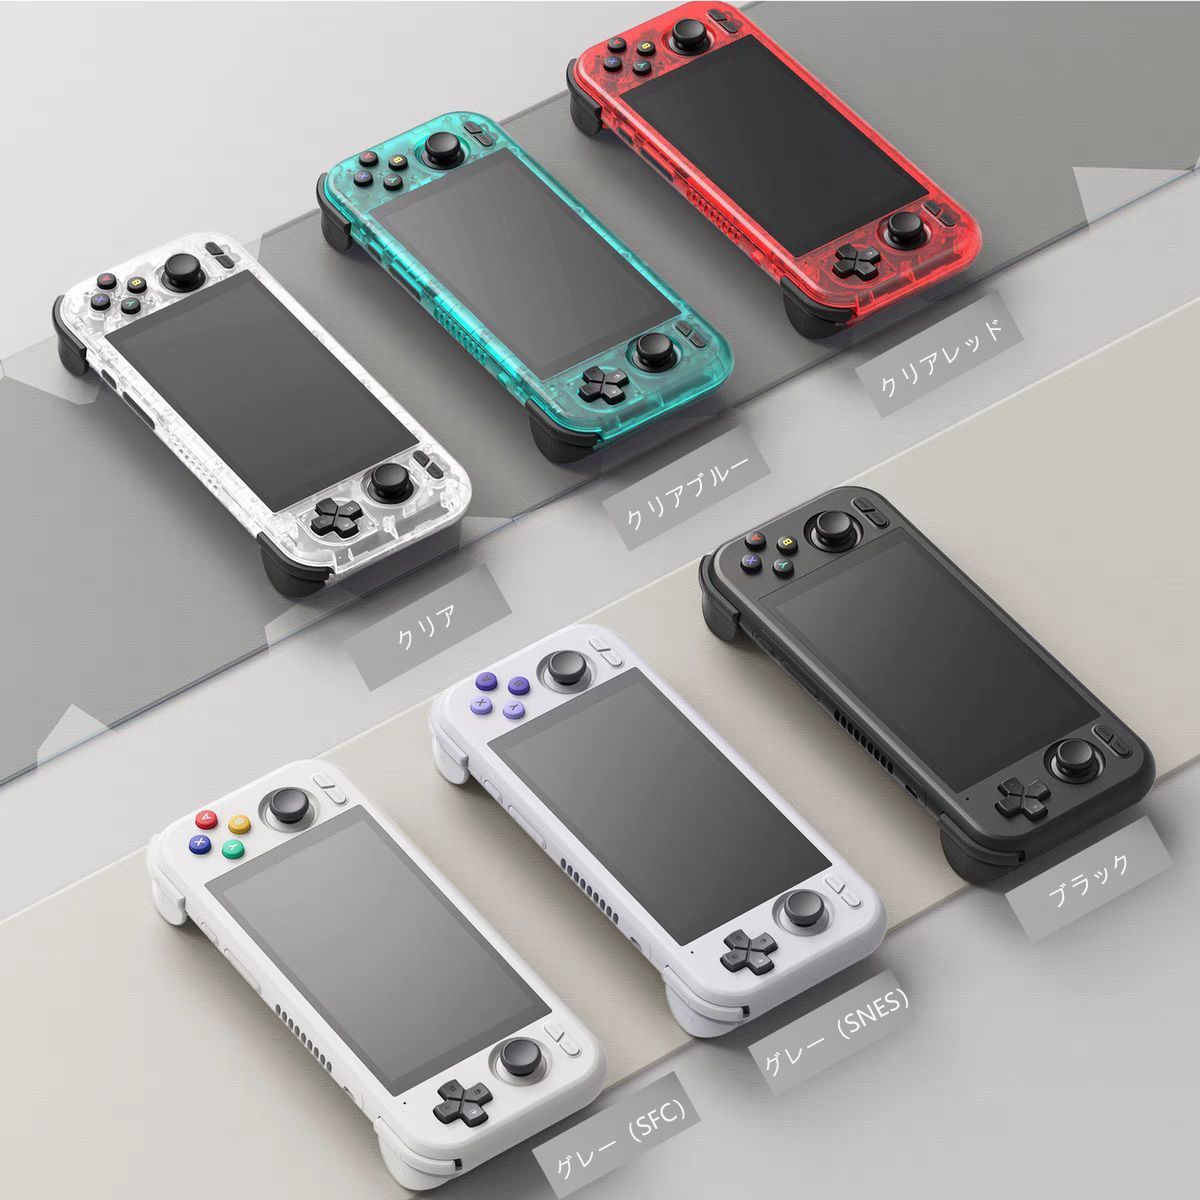 Retroid Pocket 4 Pro アイスブルー ケース付き - Nintendo Switch